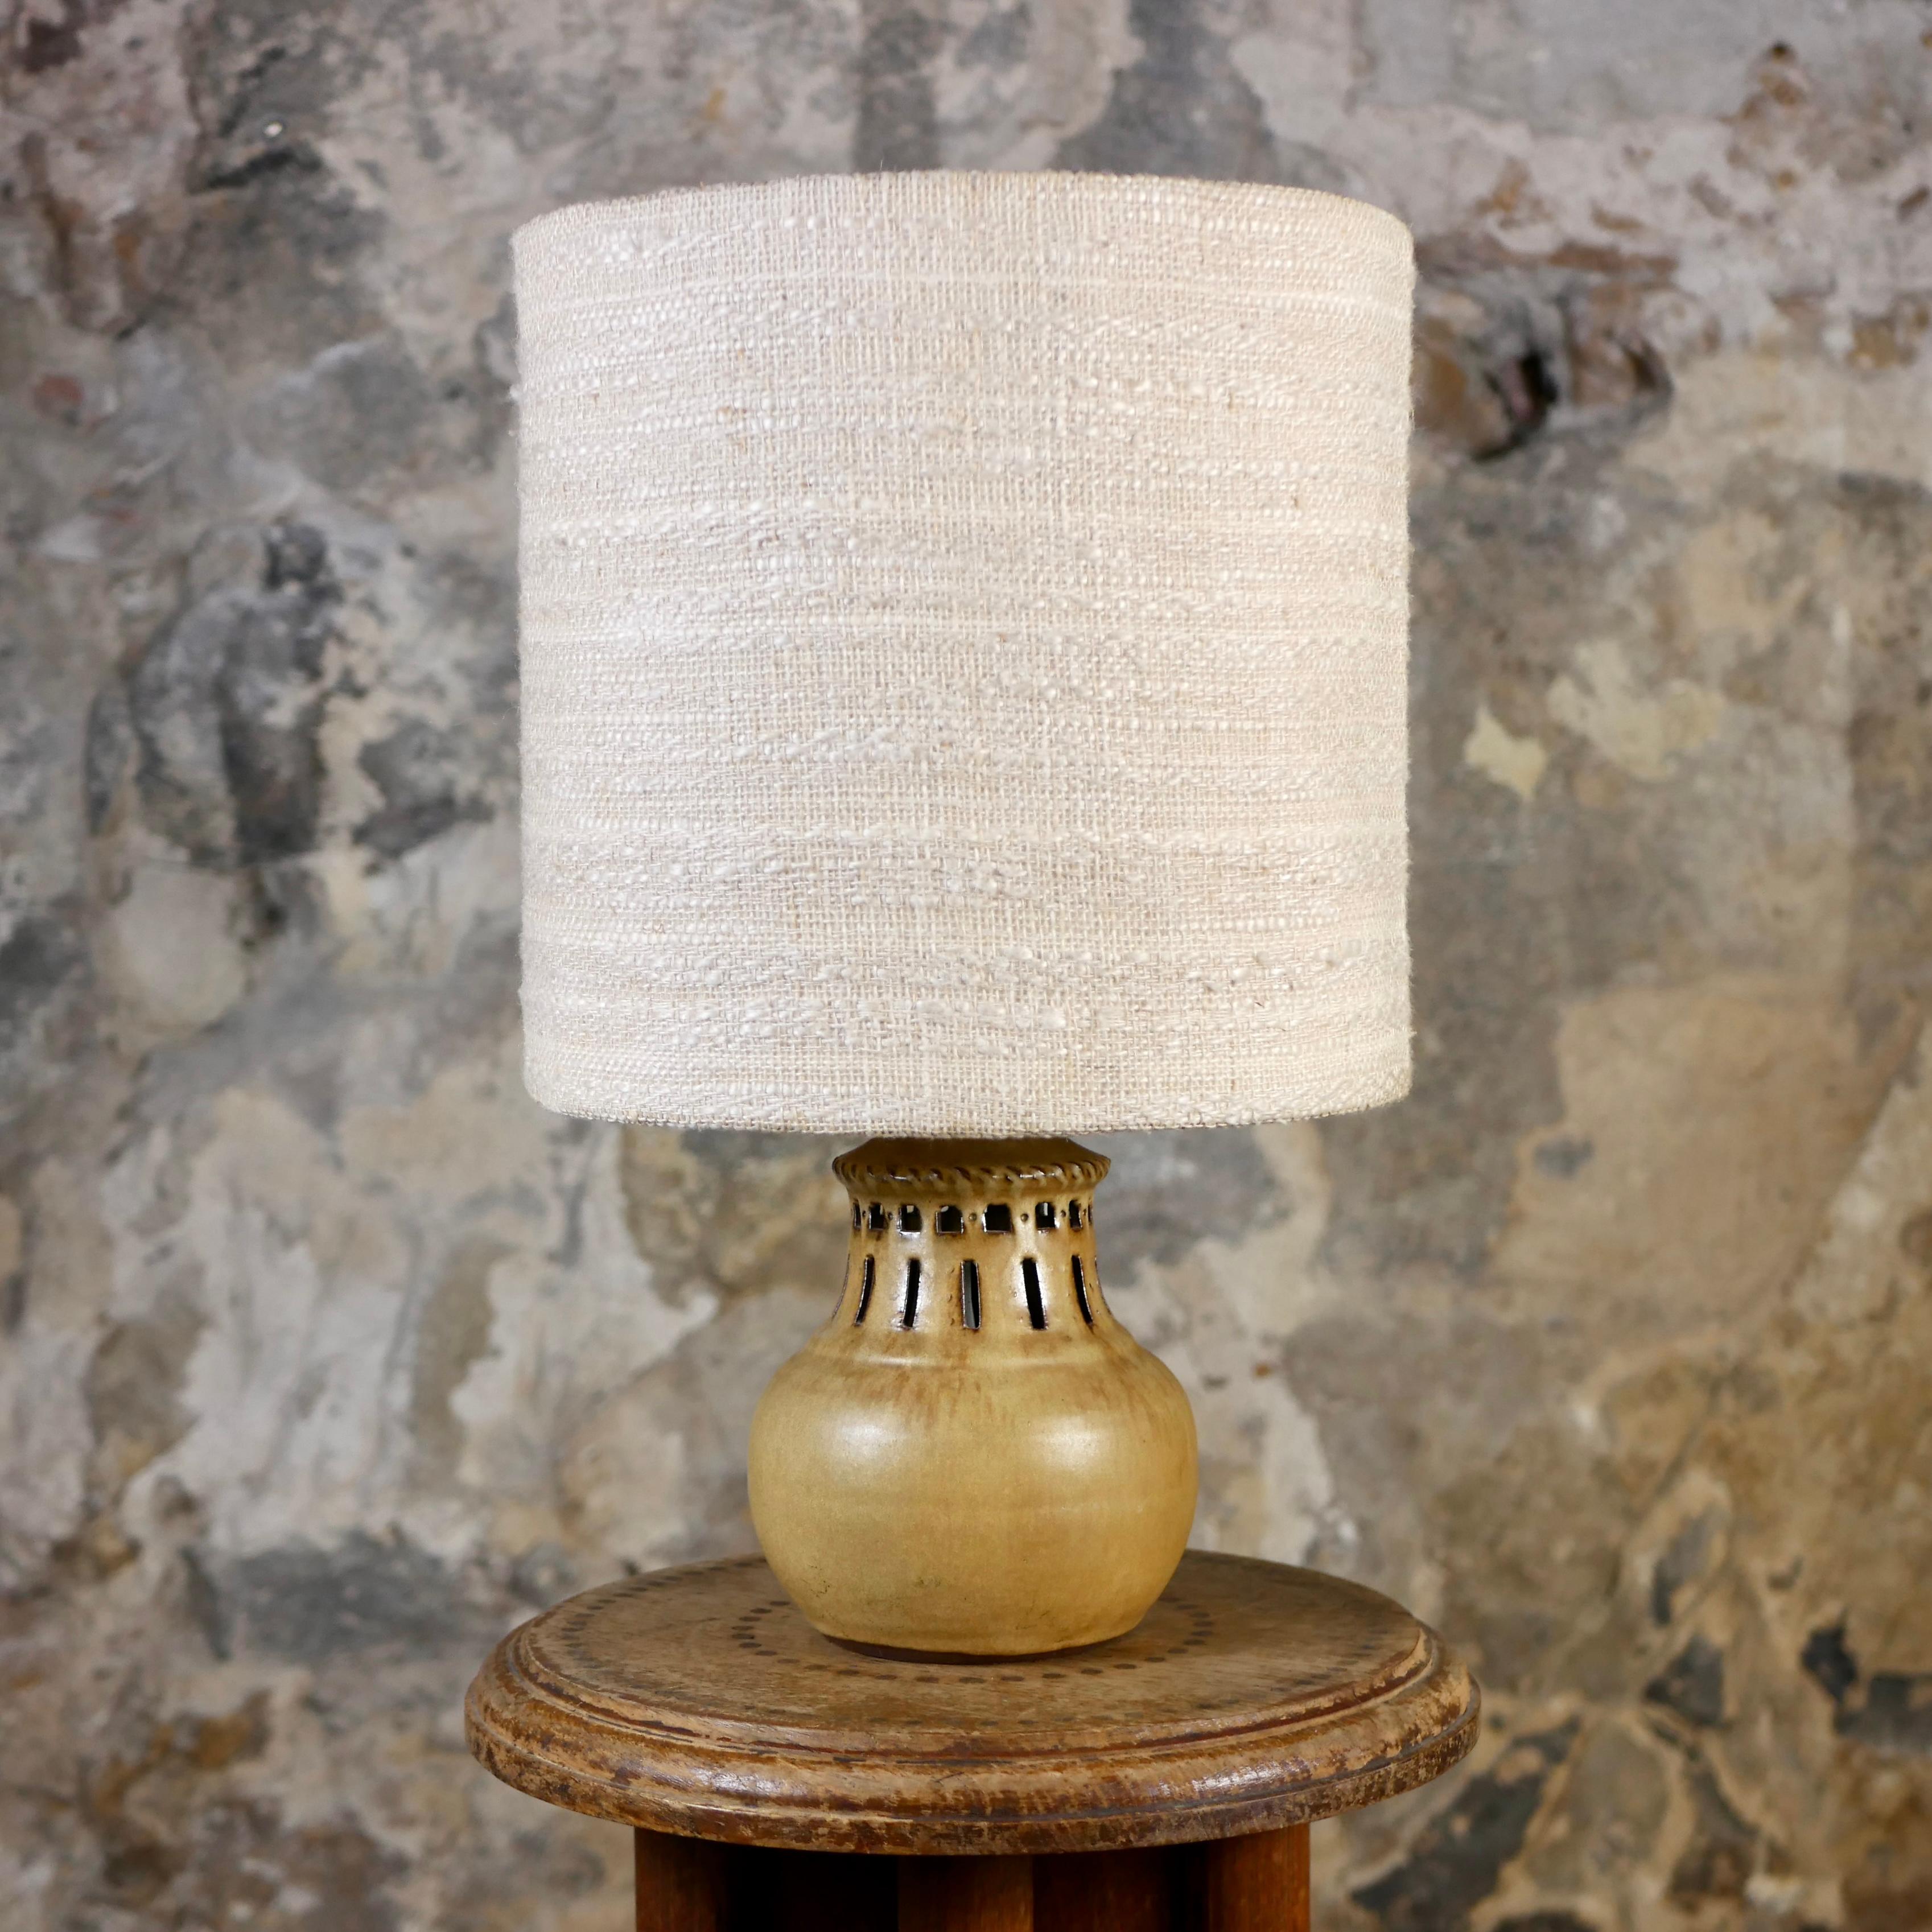 Magnifique lampe de table en grès de Thierry et Chantal Robert, provenant de leur atelier 